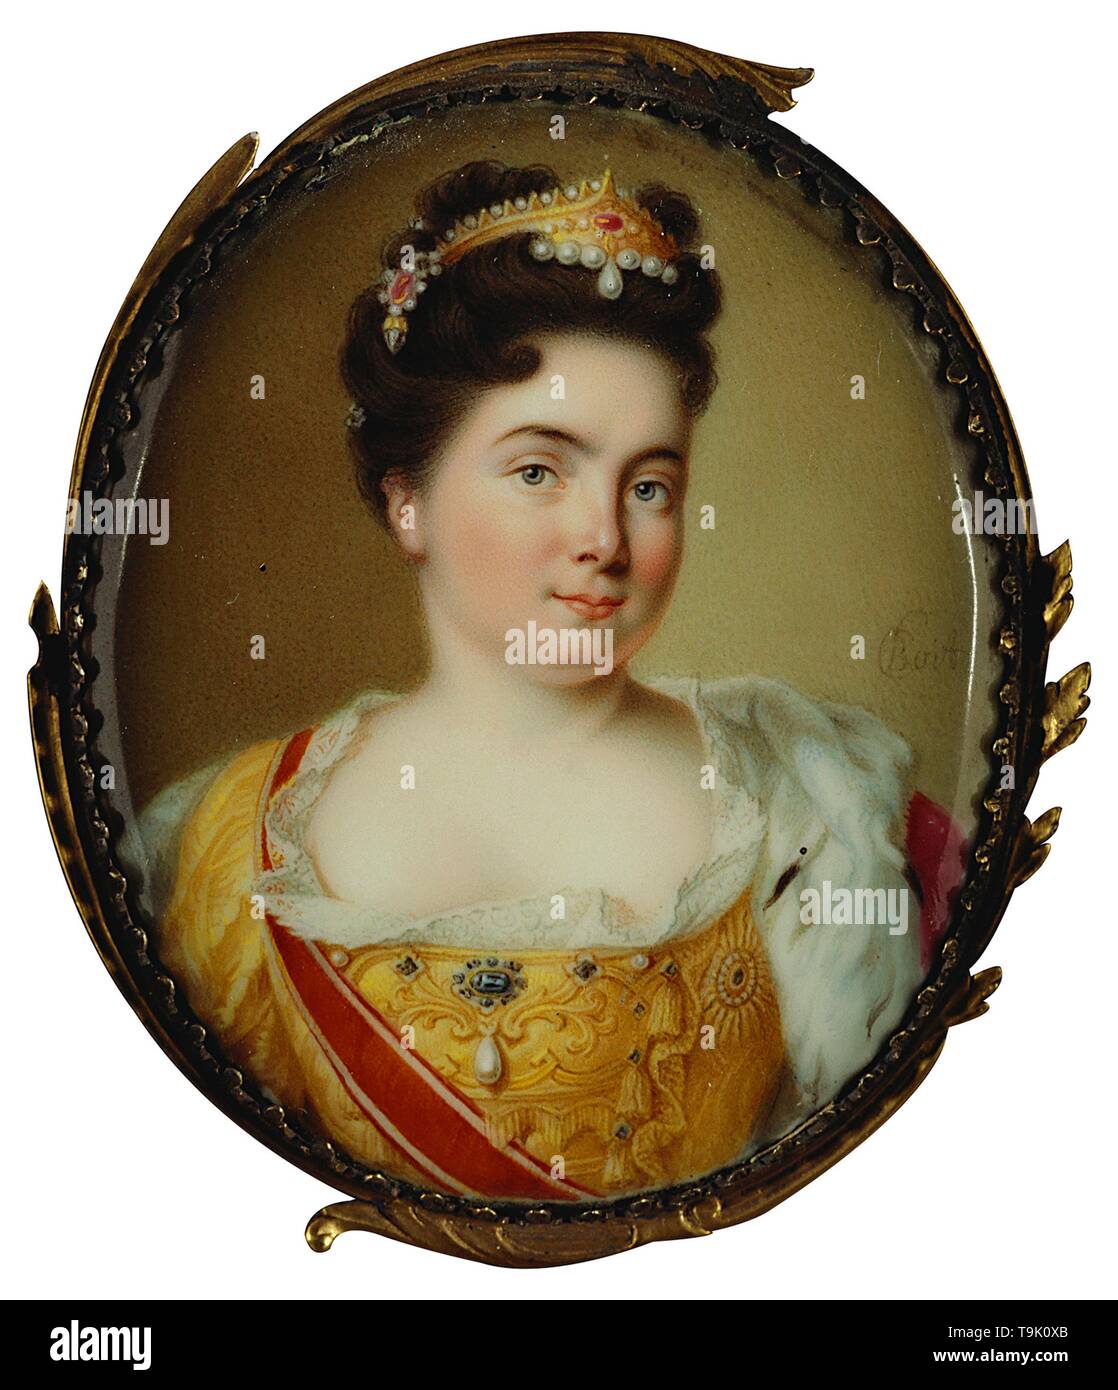 Porträt von Kaiserin Katharina I. (1684-1727). Museum: Royal Collection, London. Autor: Charles Boit. Stockfoto